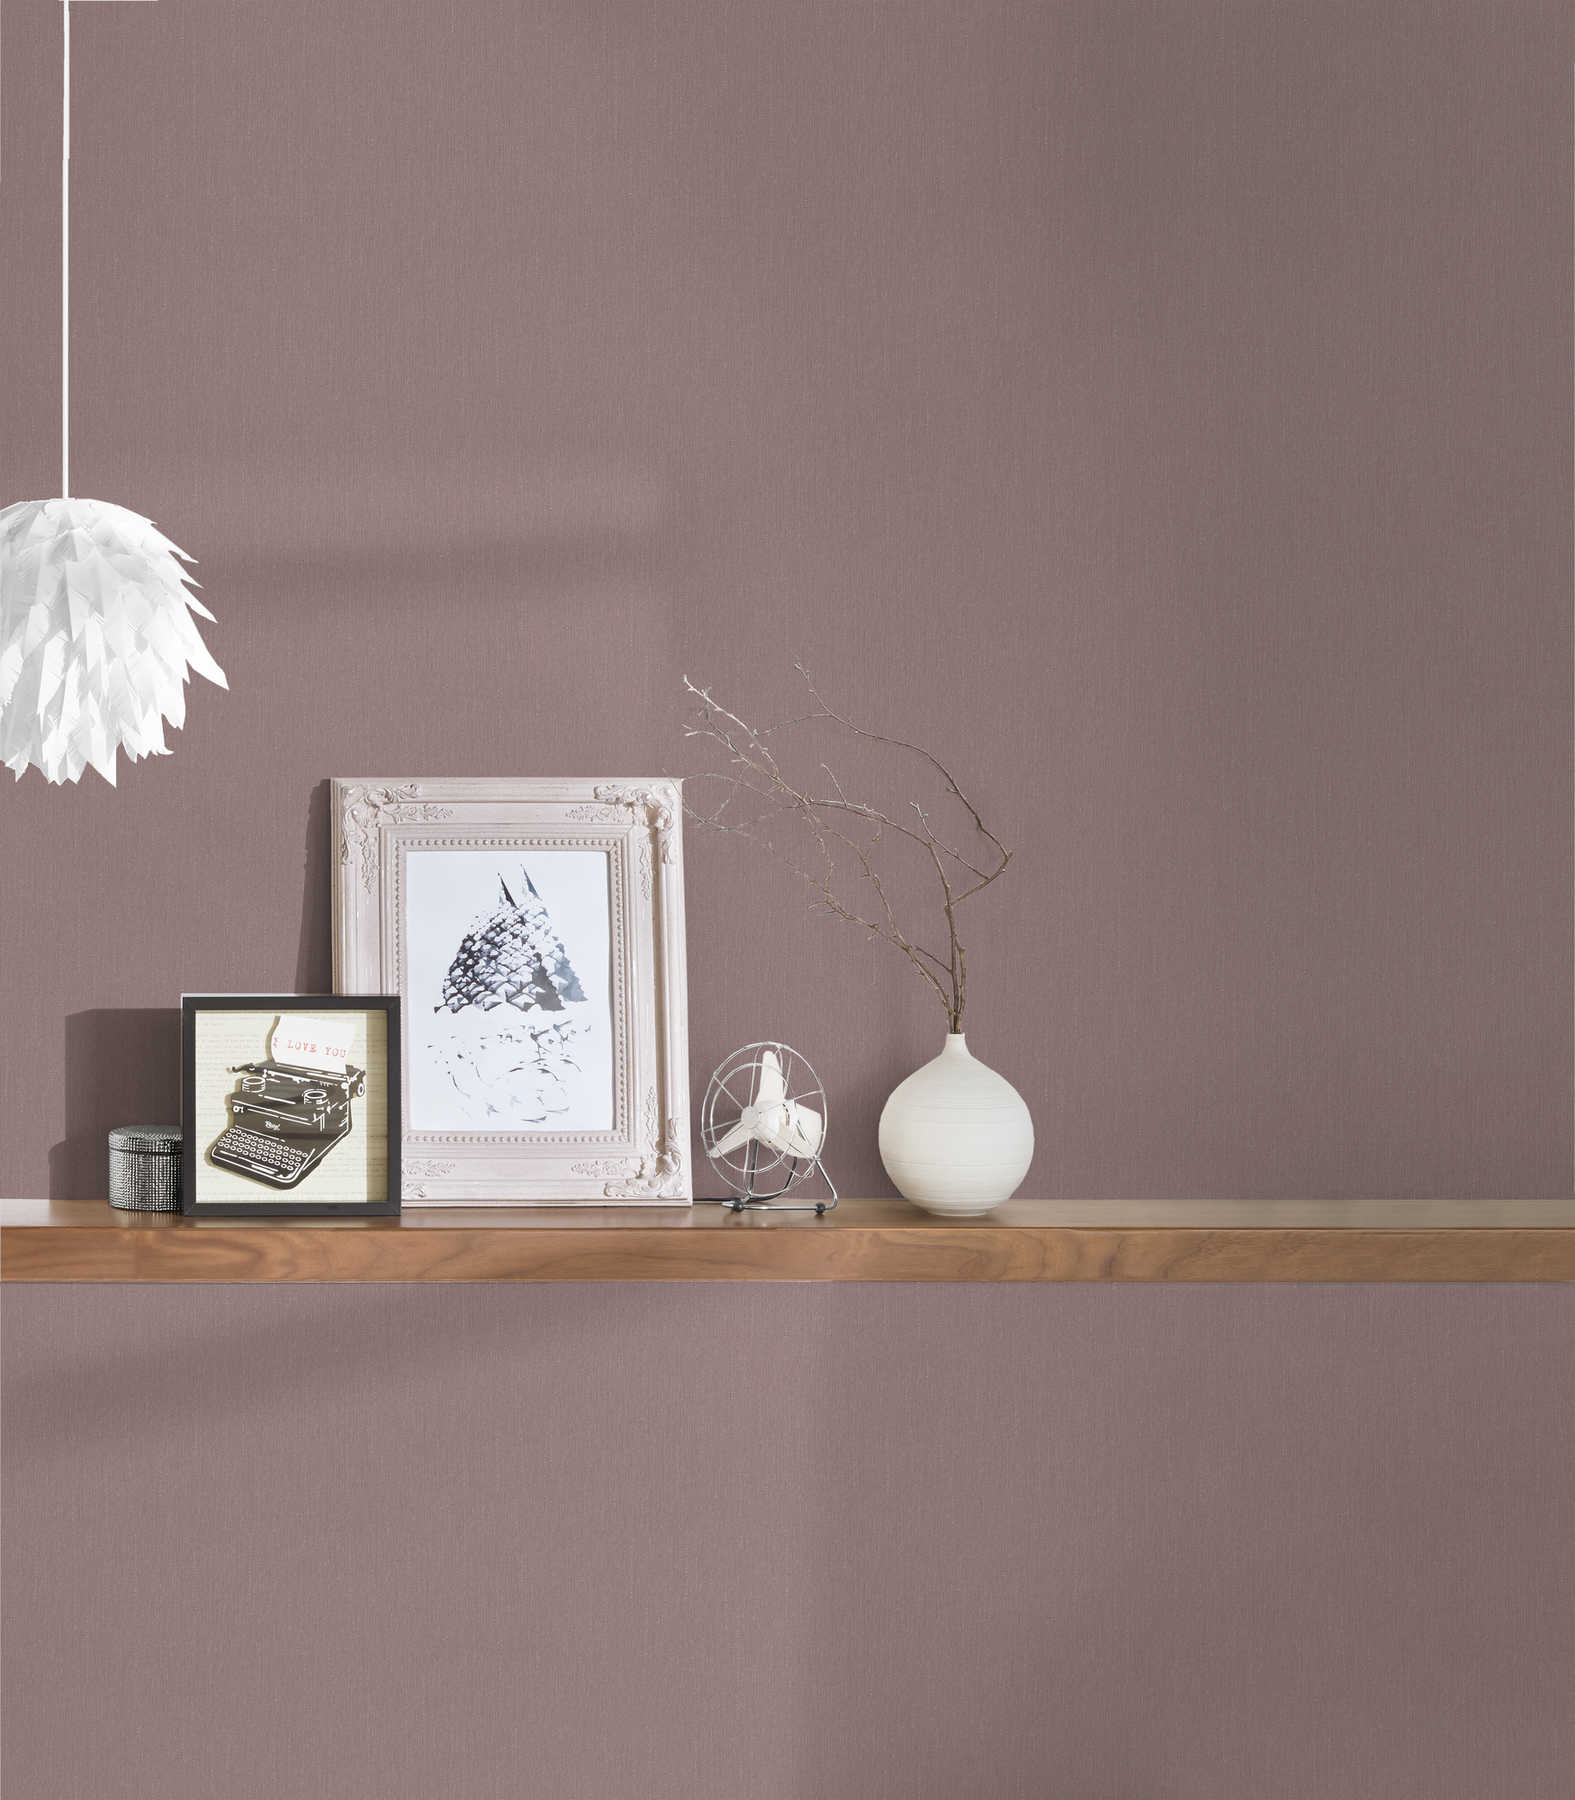             Wallpaper lilac grey monochrome & matte - grey, pink
        